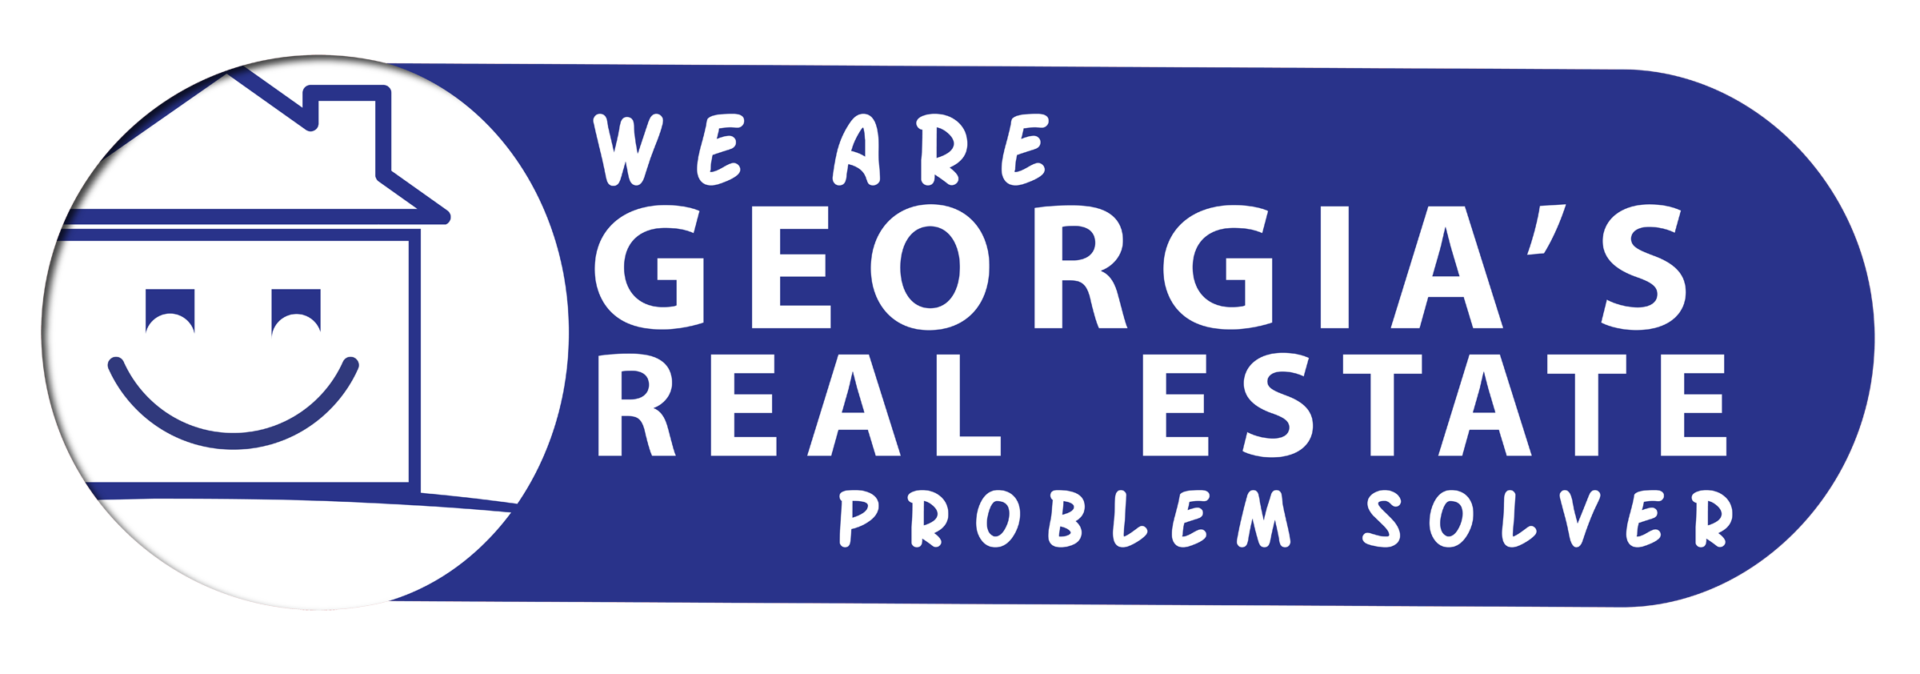 Real Estate Problem Solver logo